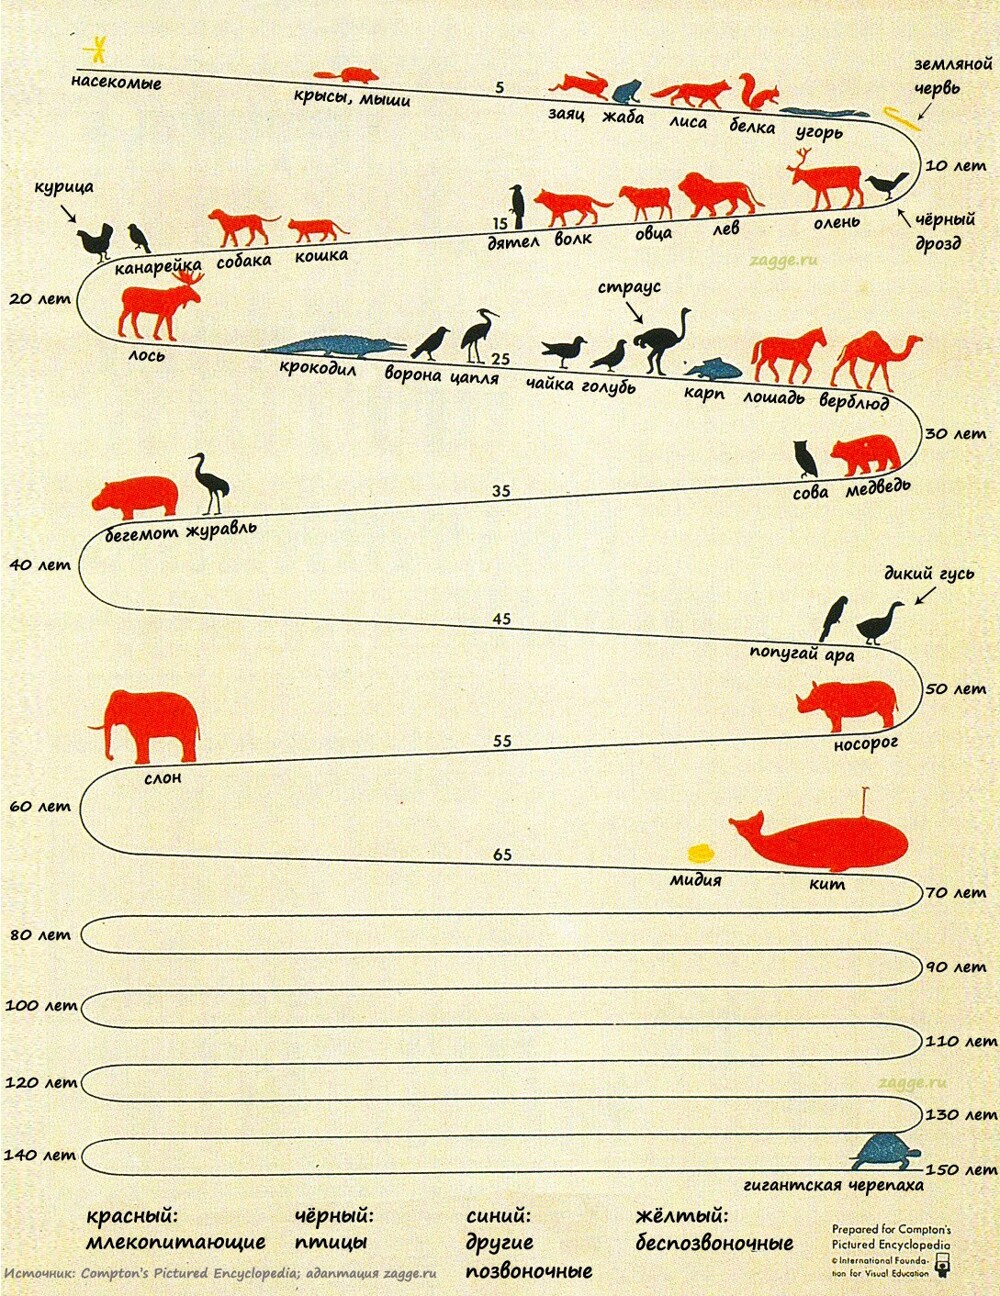 25. Продолжительность жизни животных